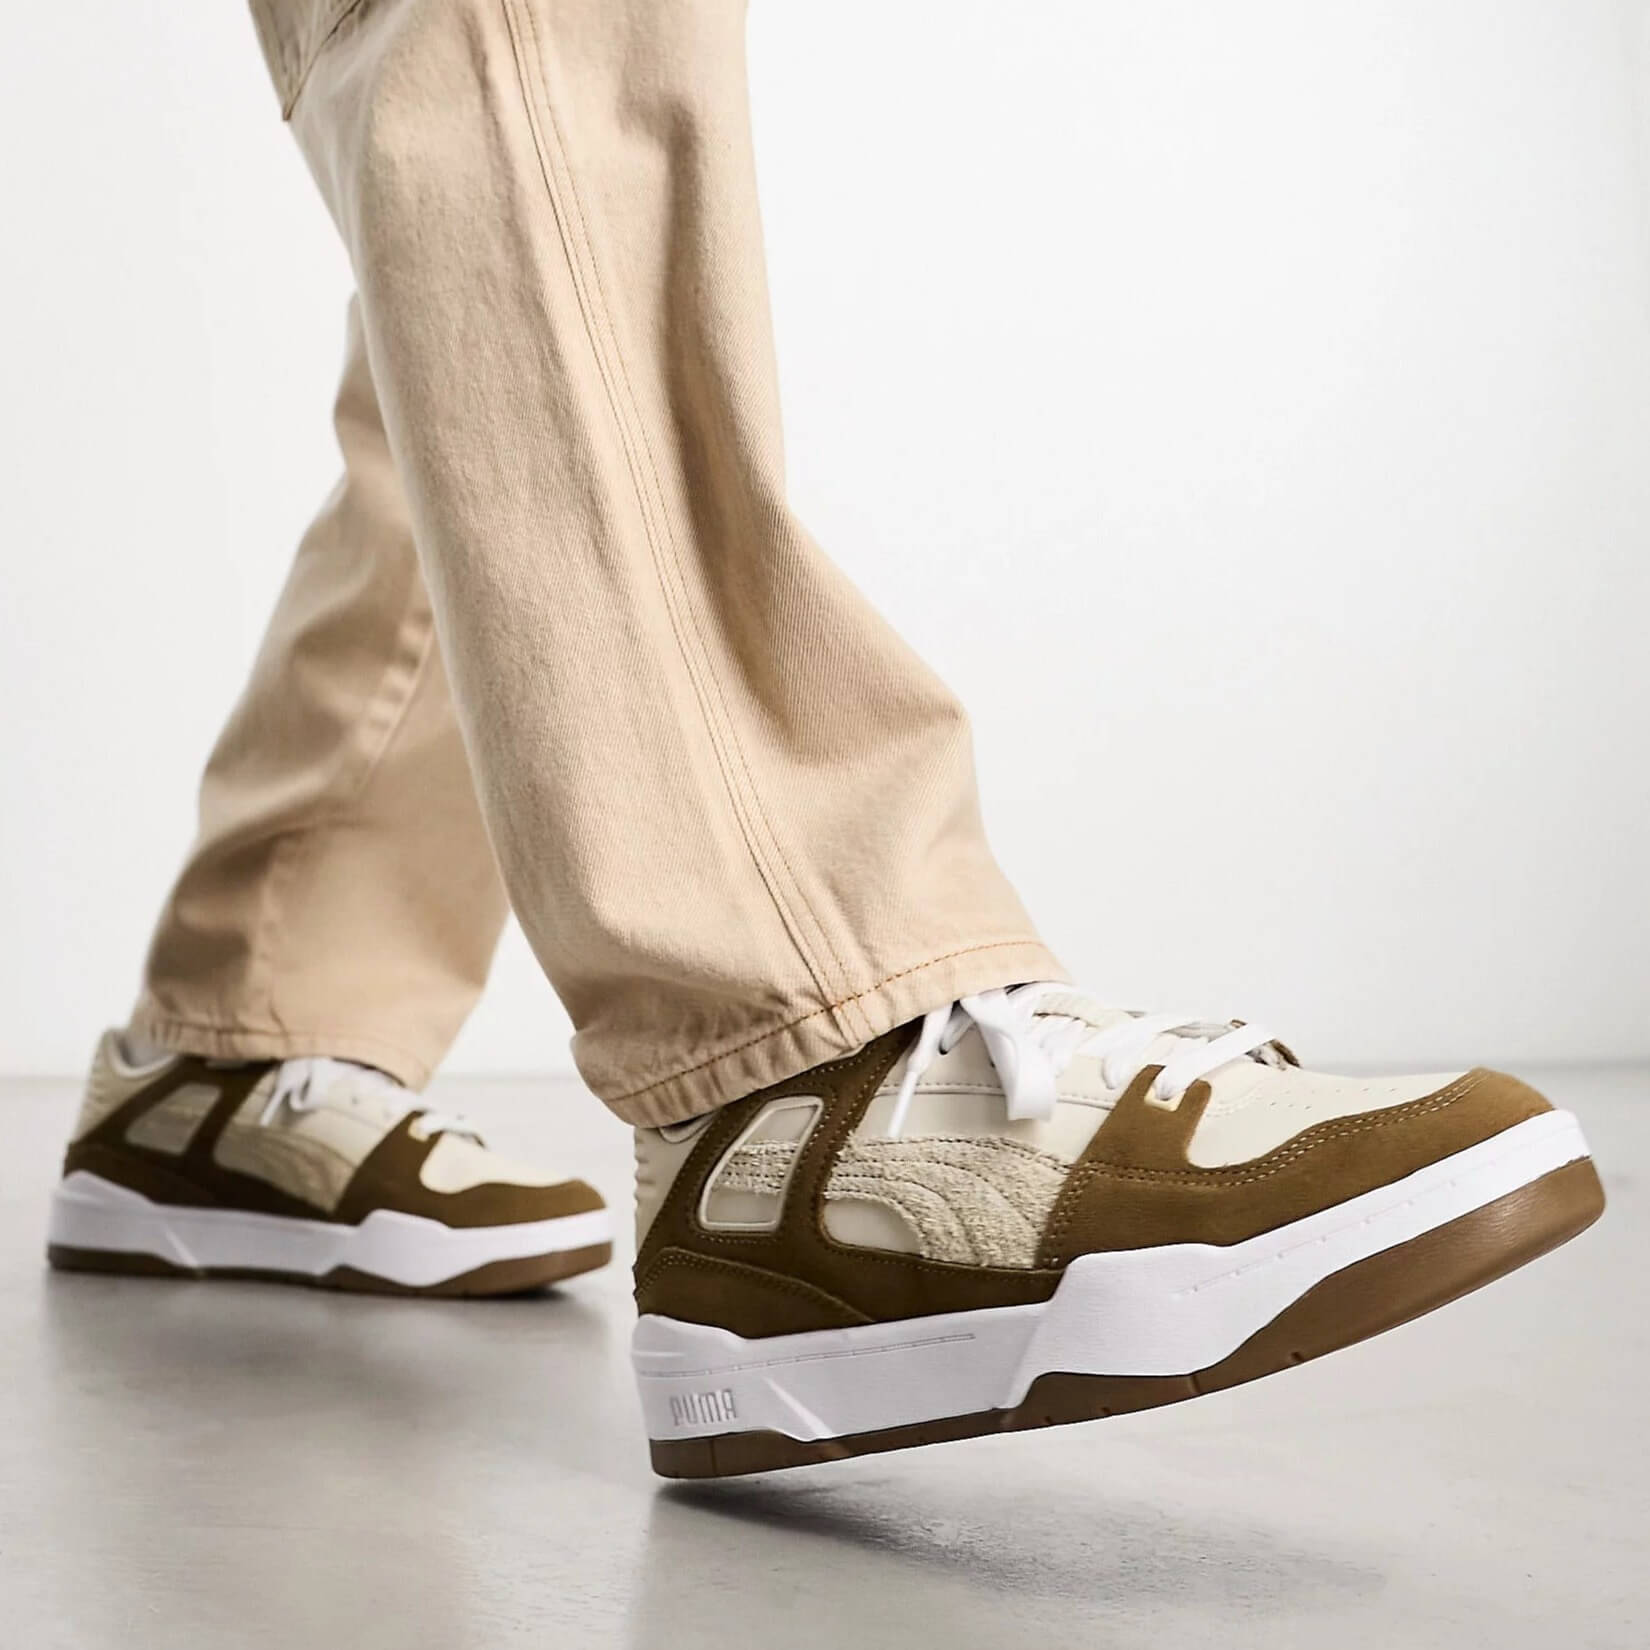 Кроссовки Puma Slipstream Trainers, бежевый кроссовки холщовые на резиновой подошве на шнуровке для мальчиков и девочек 0 18 месяцев